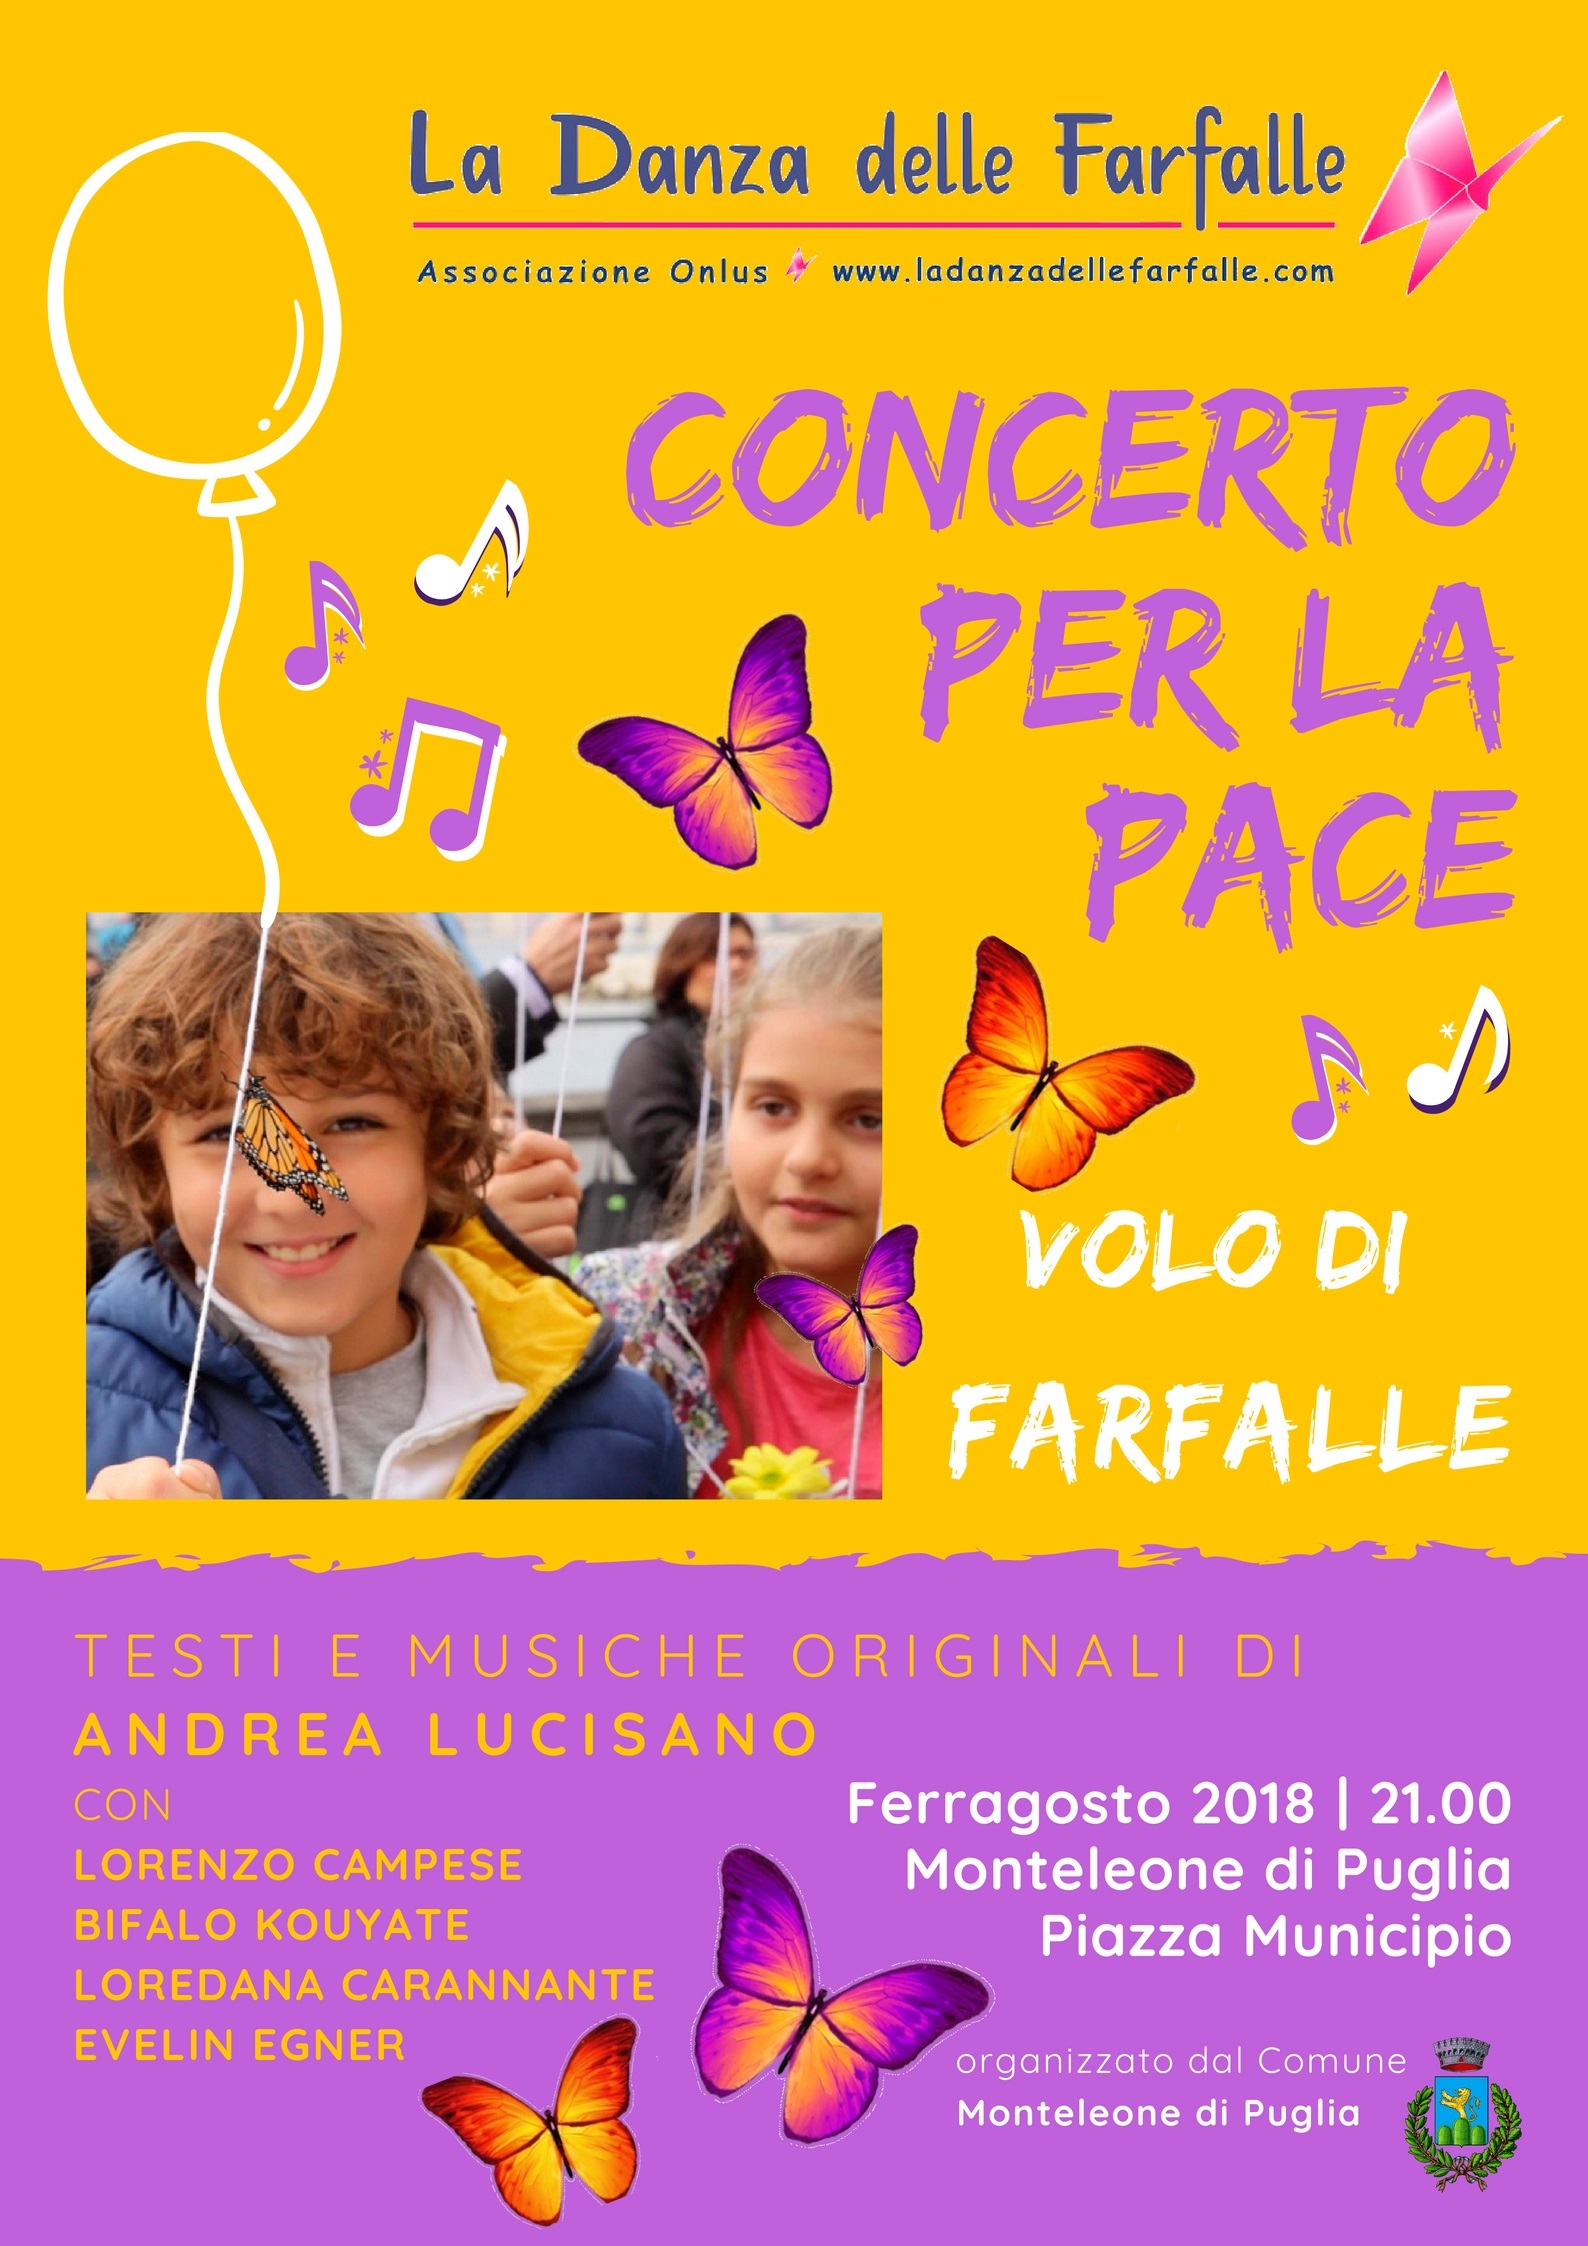 Locandina sito evento La Danza delle Farfalle Concerto per la Pace Andrea Lucisano Monteleone di Puglia Ferragosto 2018